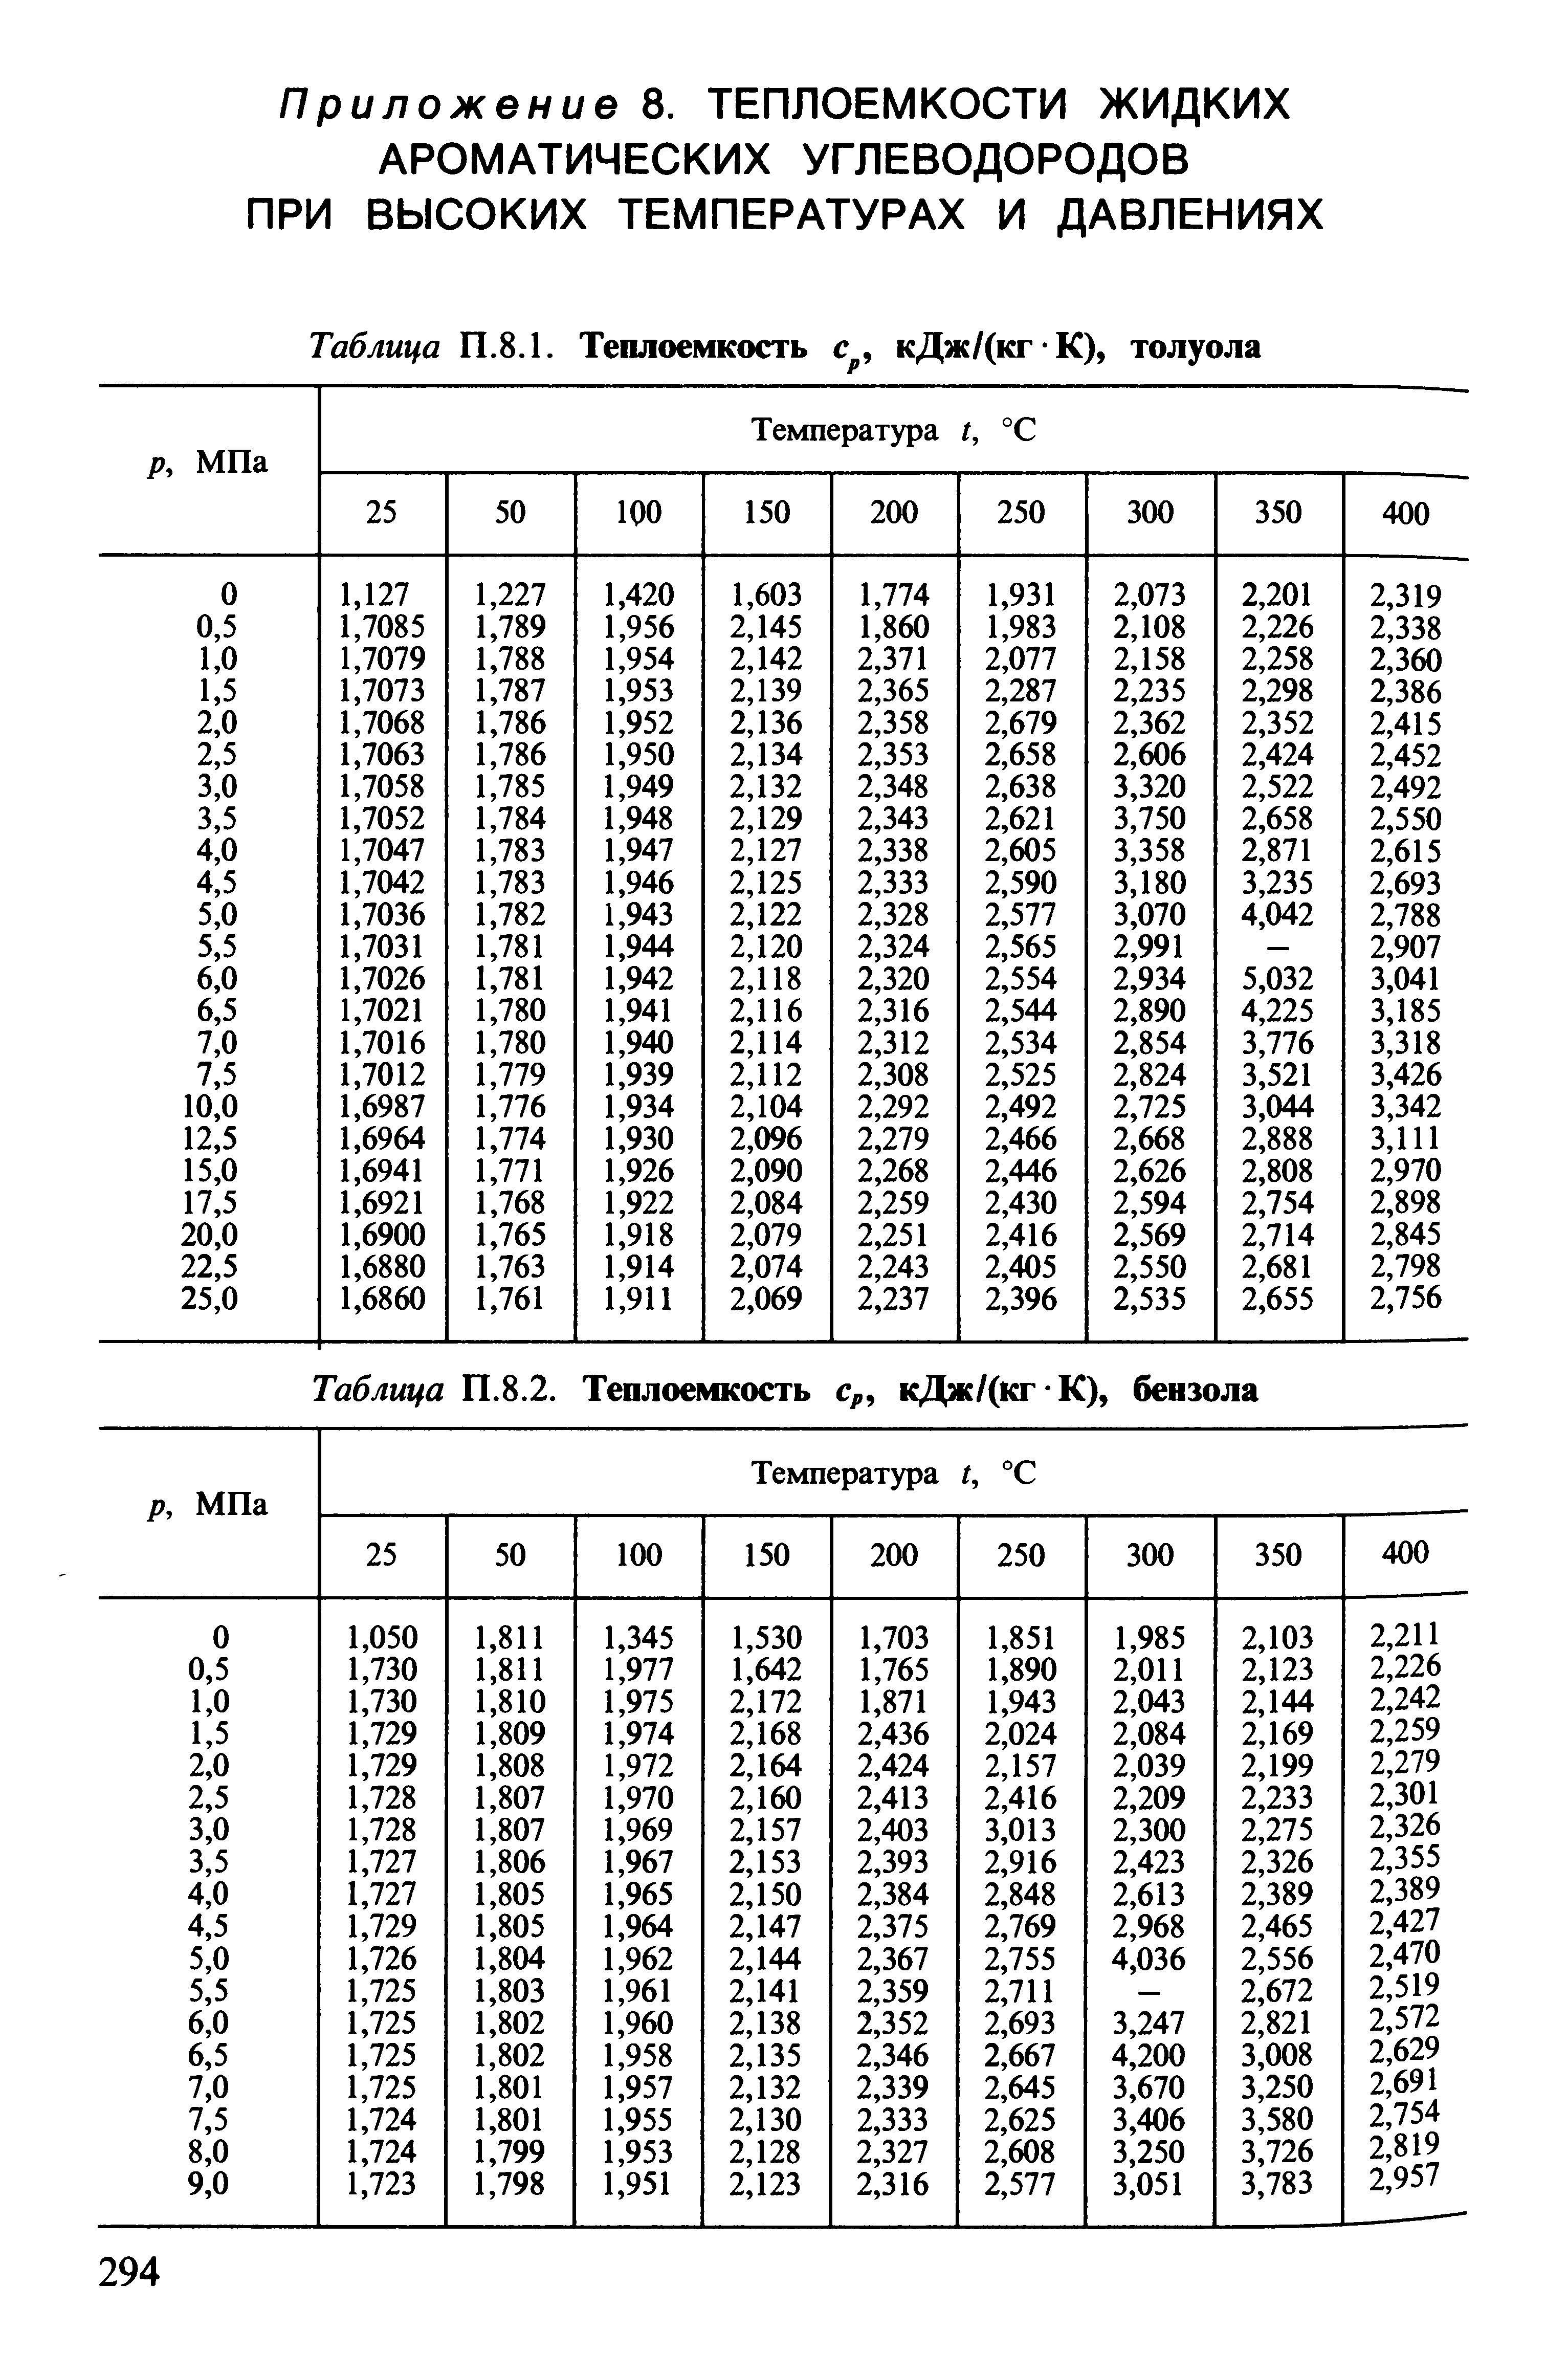 Таблица П.8.2. Теплоемкость с кДж/(кг К), бензола
